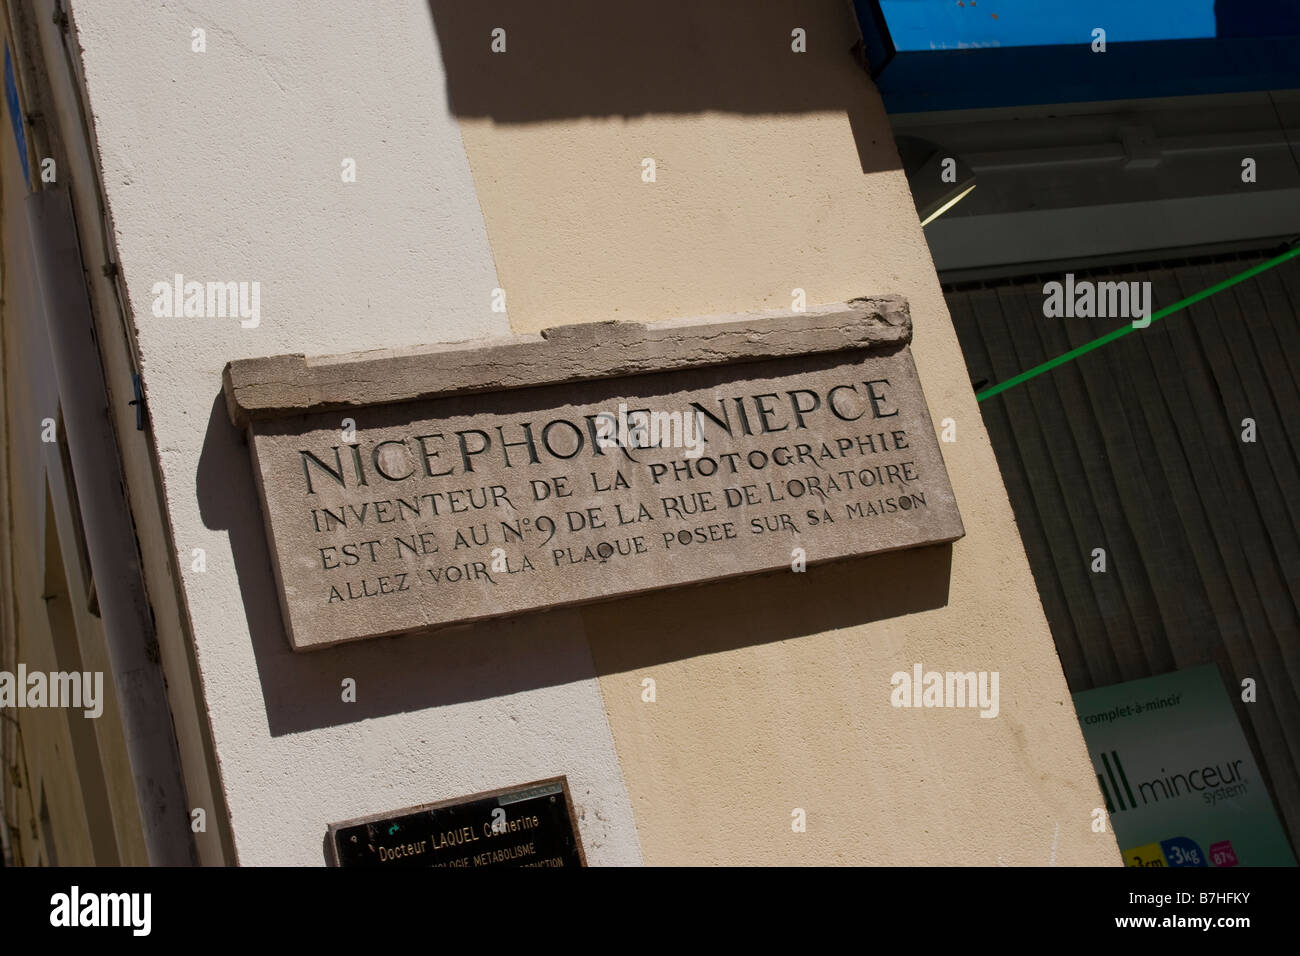 Nicéphore Niepce Inventeur De La Photographie, Chalon Sur Saone Burgund Frankreich EU. Stockfoto